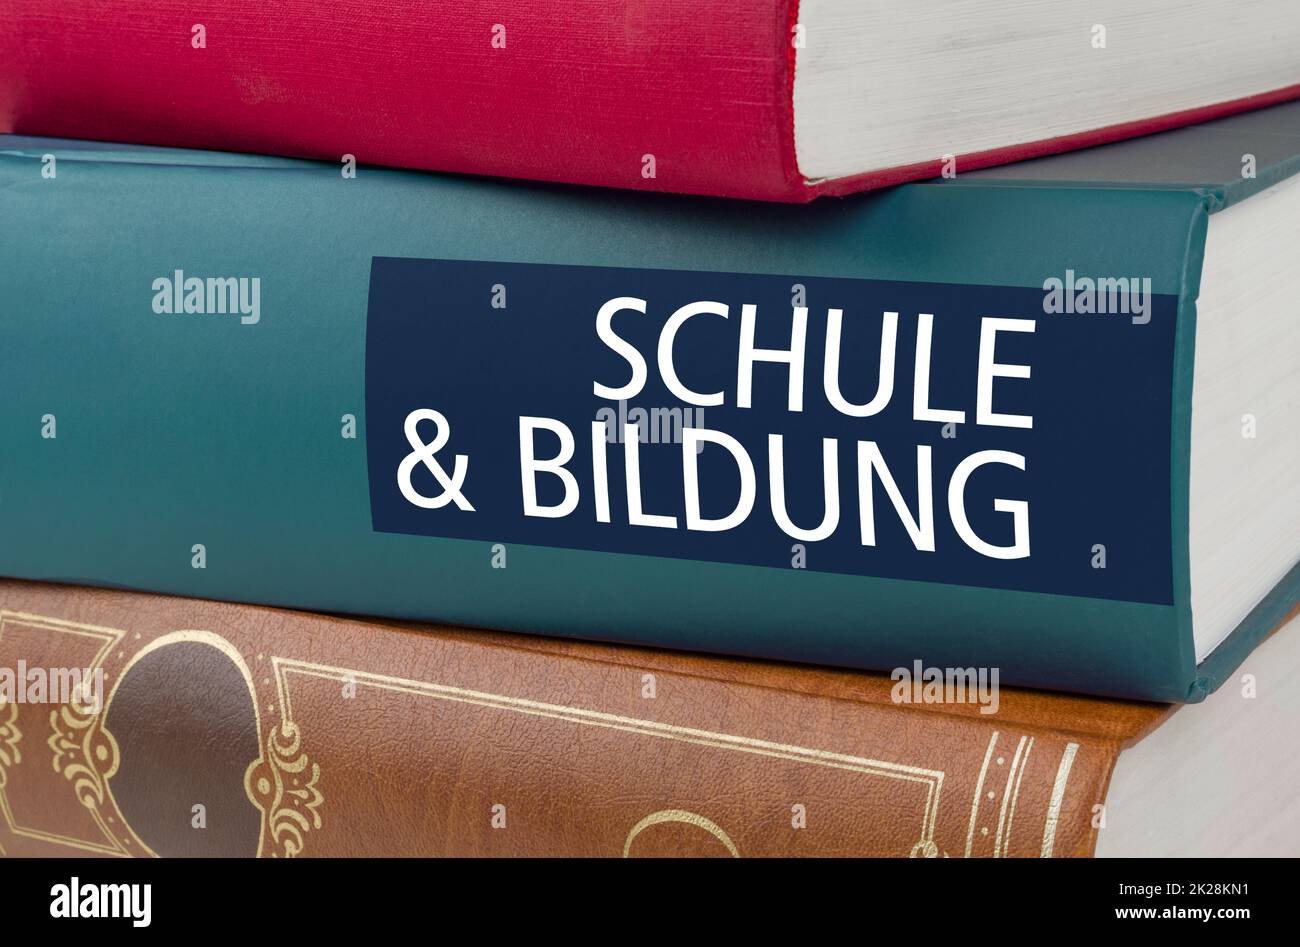 Un livre avec le titre School and Education écrit sur la colonne vertébrale - Schule und Bildung (allemand) Banque D'Images